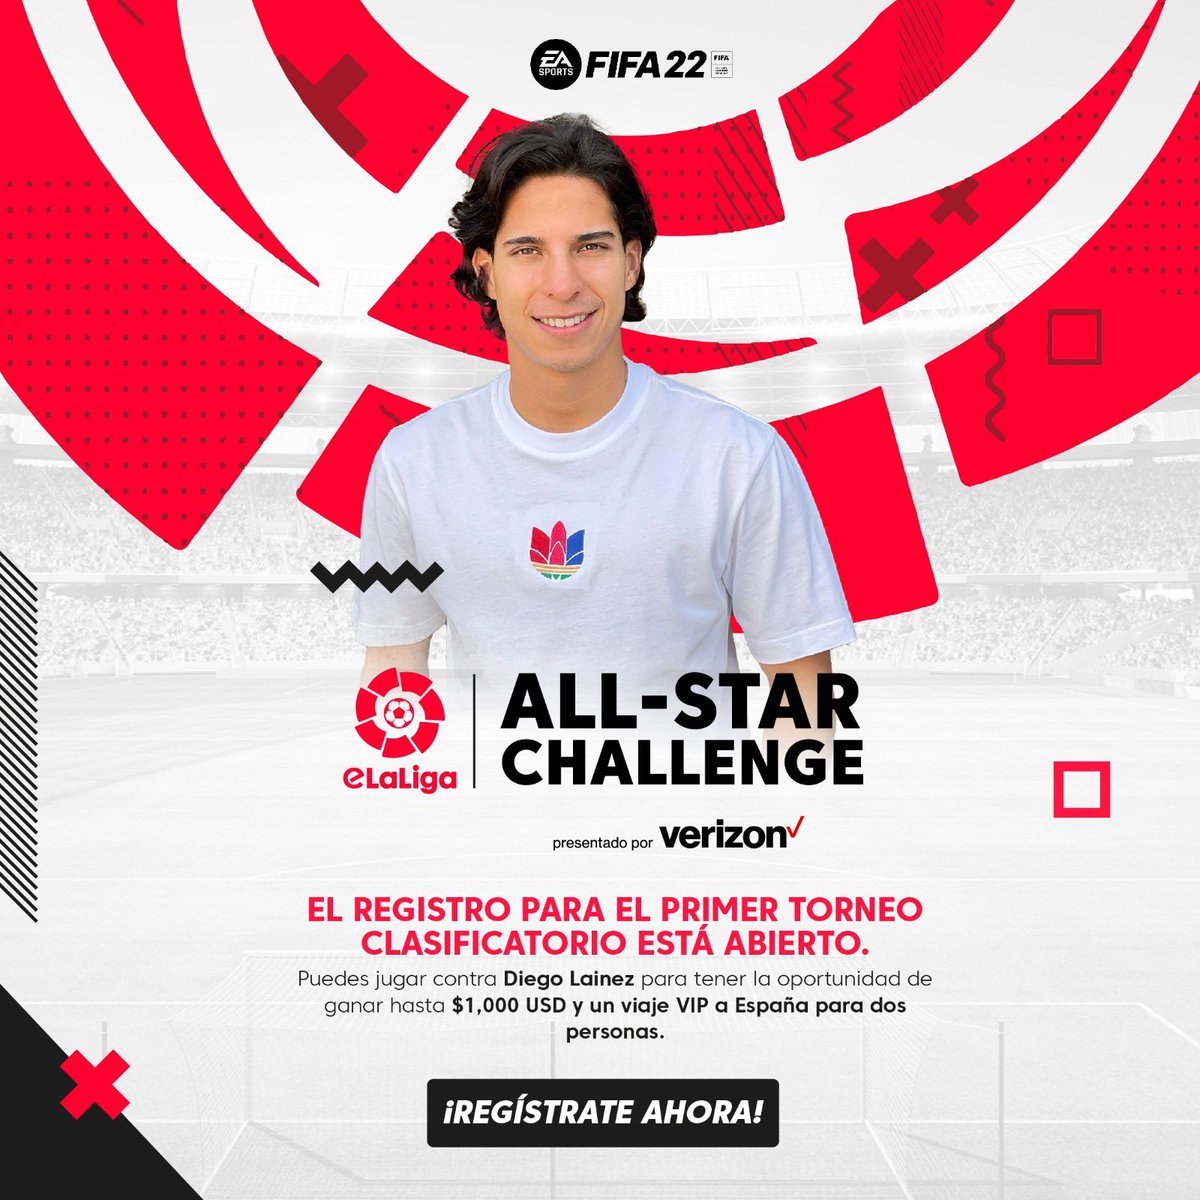 ¿Crees que puedes vencerme en @EASPORTSFIFA? Apúntate al eLaLiga All-Star Challenge presentado por @Verizon para conseguir jugar conmigo, ganar hasta $1,000, y un viaje a España. ¡Inscríbete ahora! @LaLiga #LaLigaAmerica #LaLigaJuegaConVerizon 🎮: bit.ly/LainezGaming